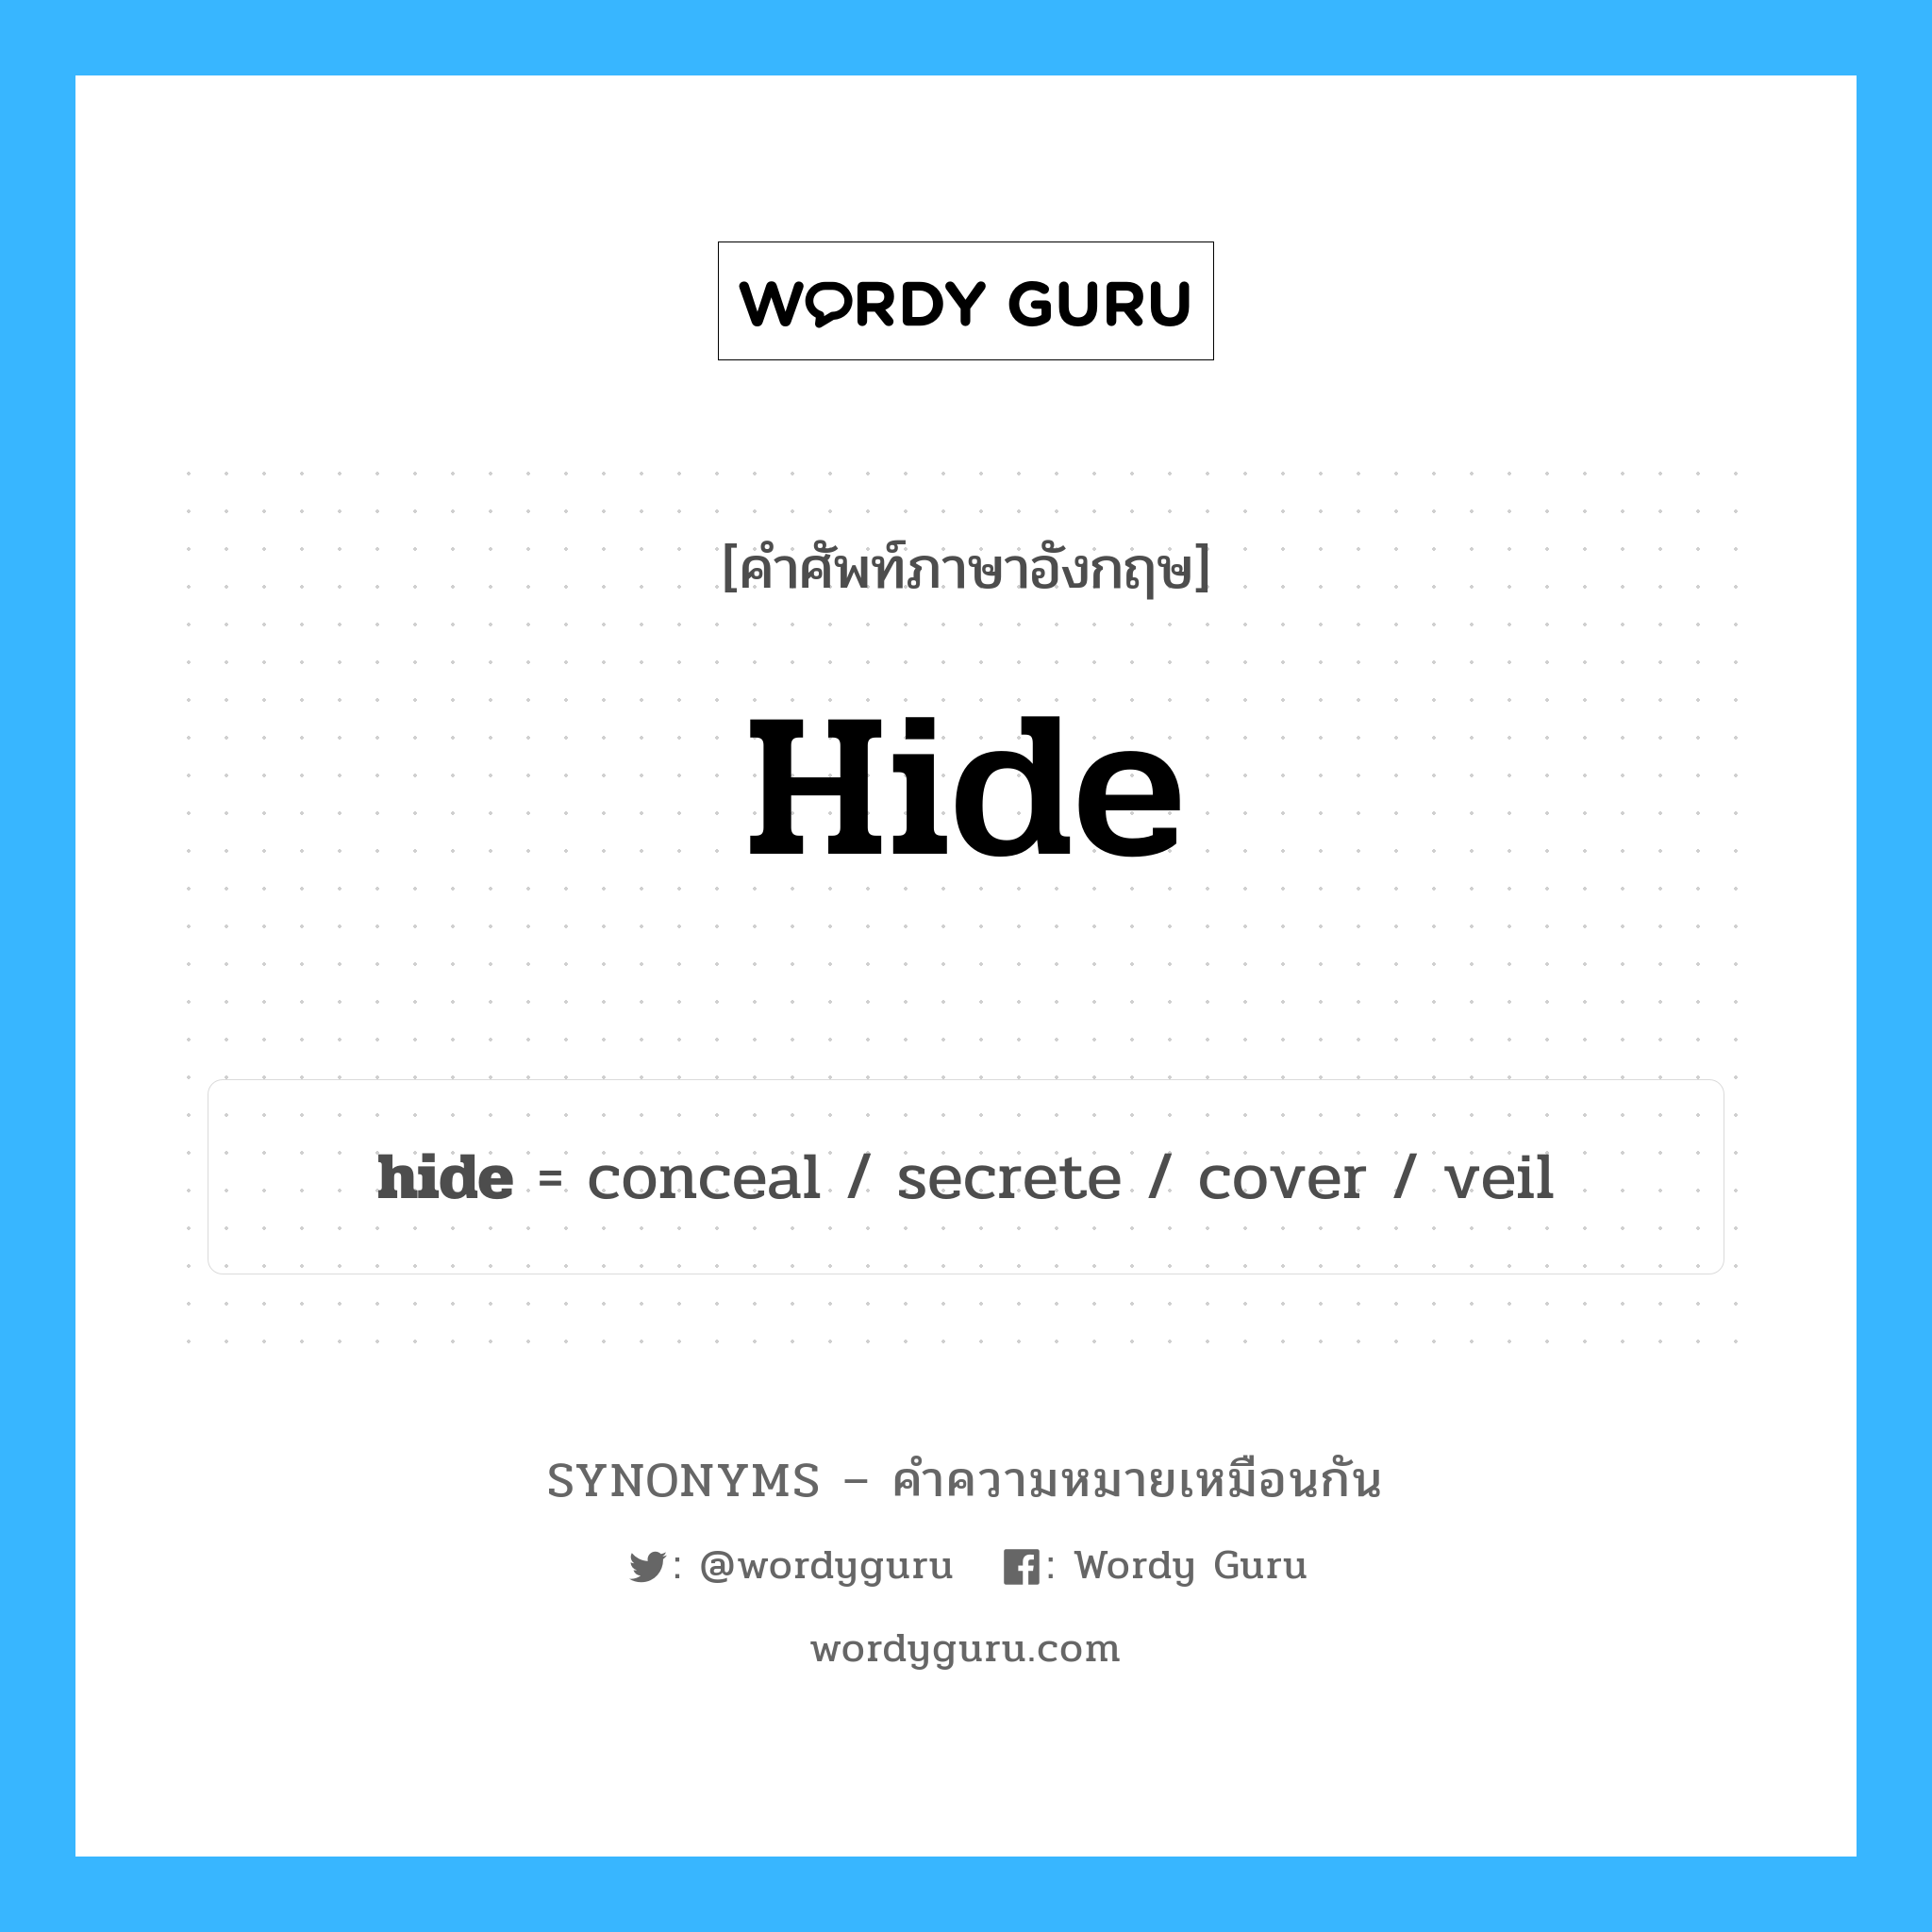 conceal เป็นหนึ่งใน hide และมีคำอื่น ๆ อีกดังนี้, คำศัพท์ภาษาอังกฤษ conceal ความหมายคล้ายกันกับ hide แปลว่า ปกปิด หมวด hide